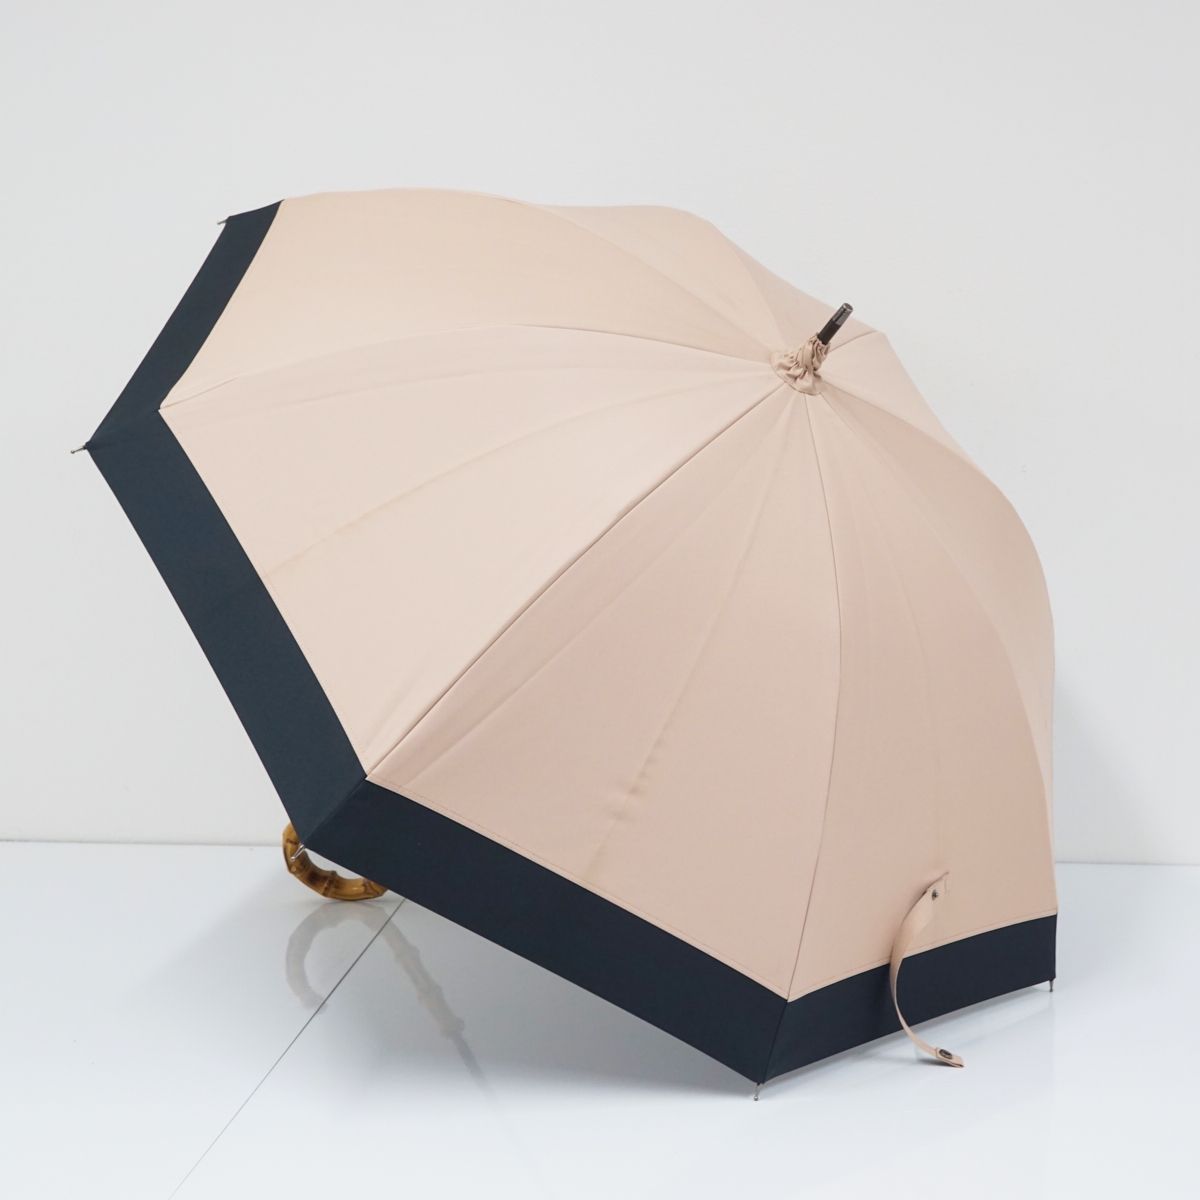 サンバリア100 完全遮光日傘 USED美品 Mサイズ ピンク×ブラック コンビ